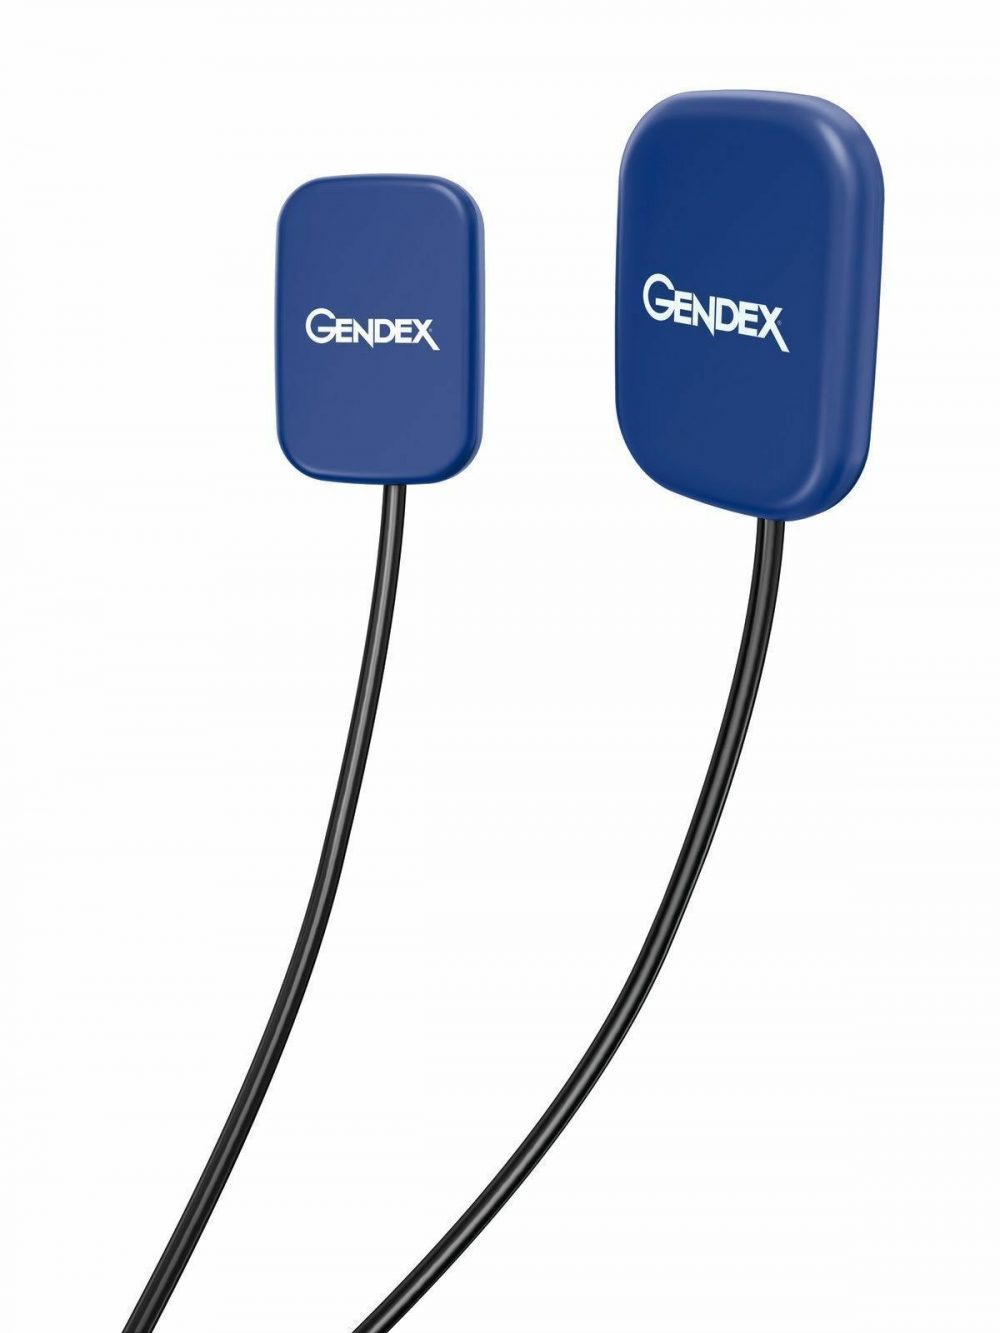 Gendex GXS-700 Digital Intraoral Sensors